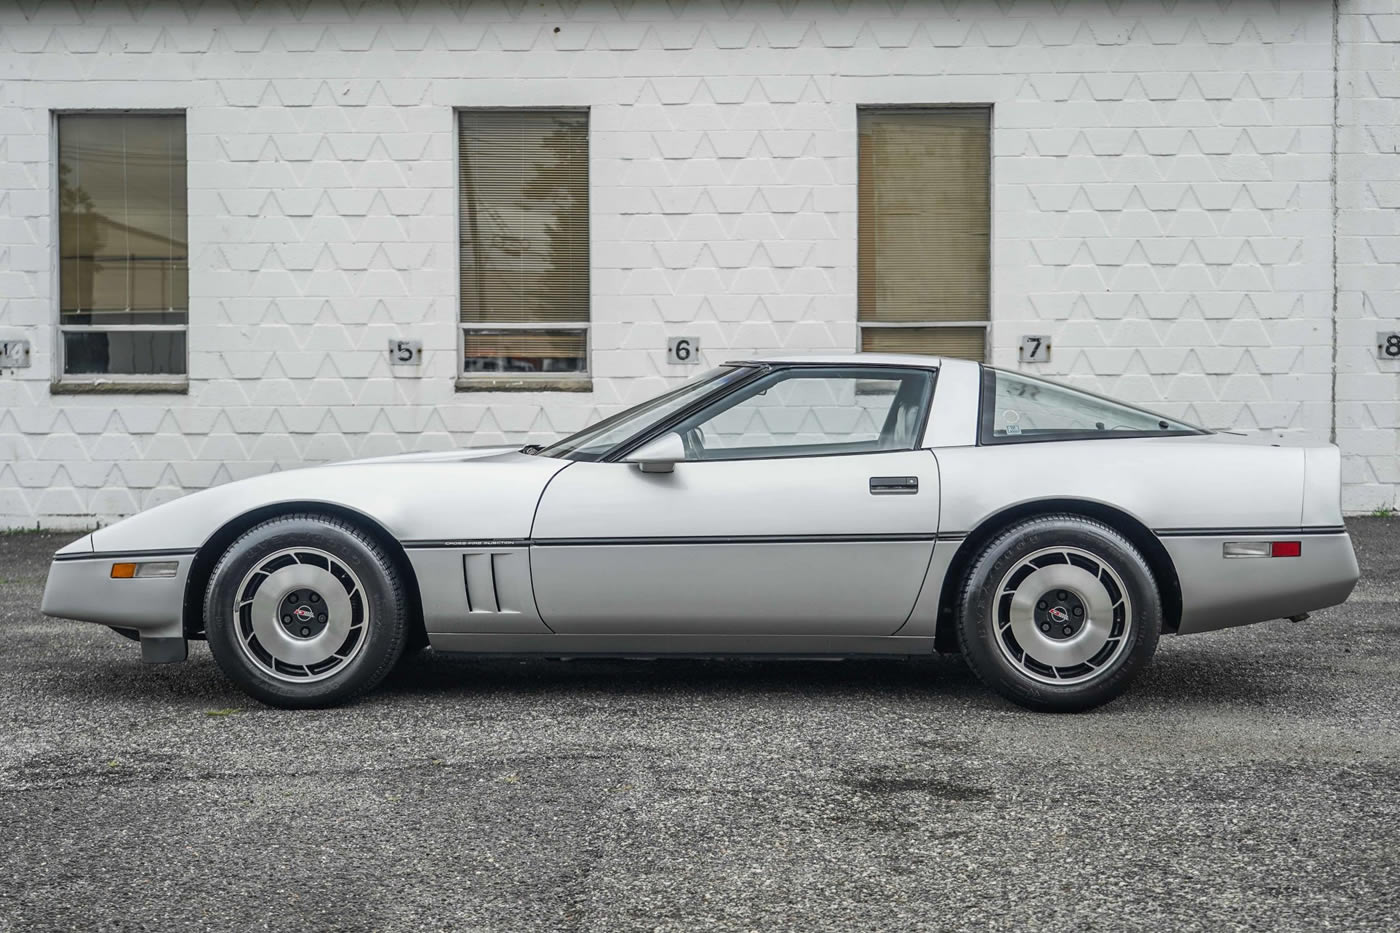 1984 Corvette in Silver Metallic